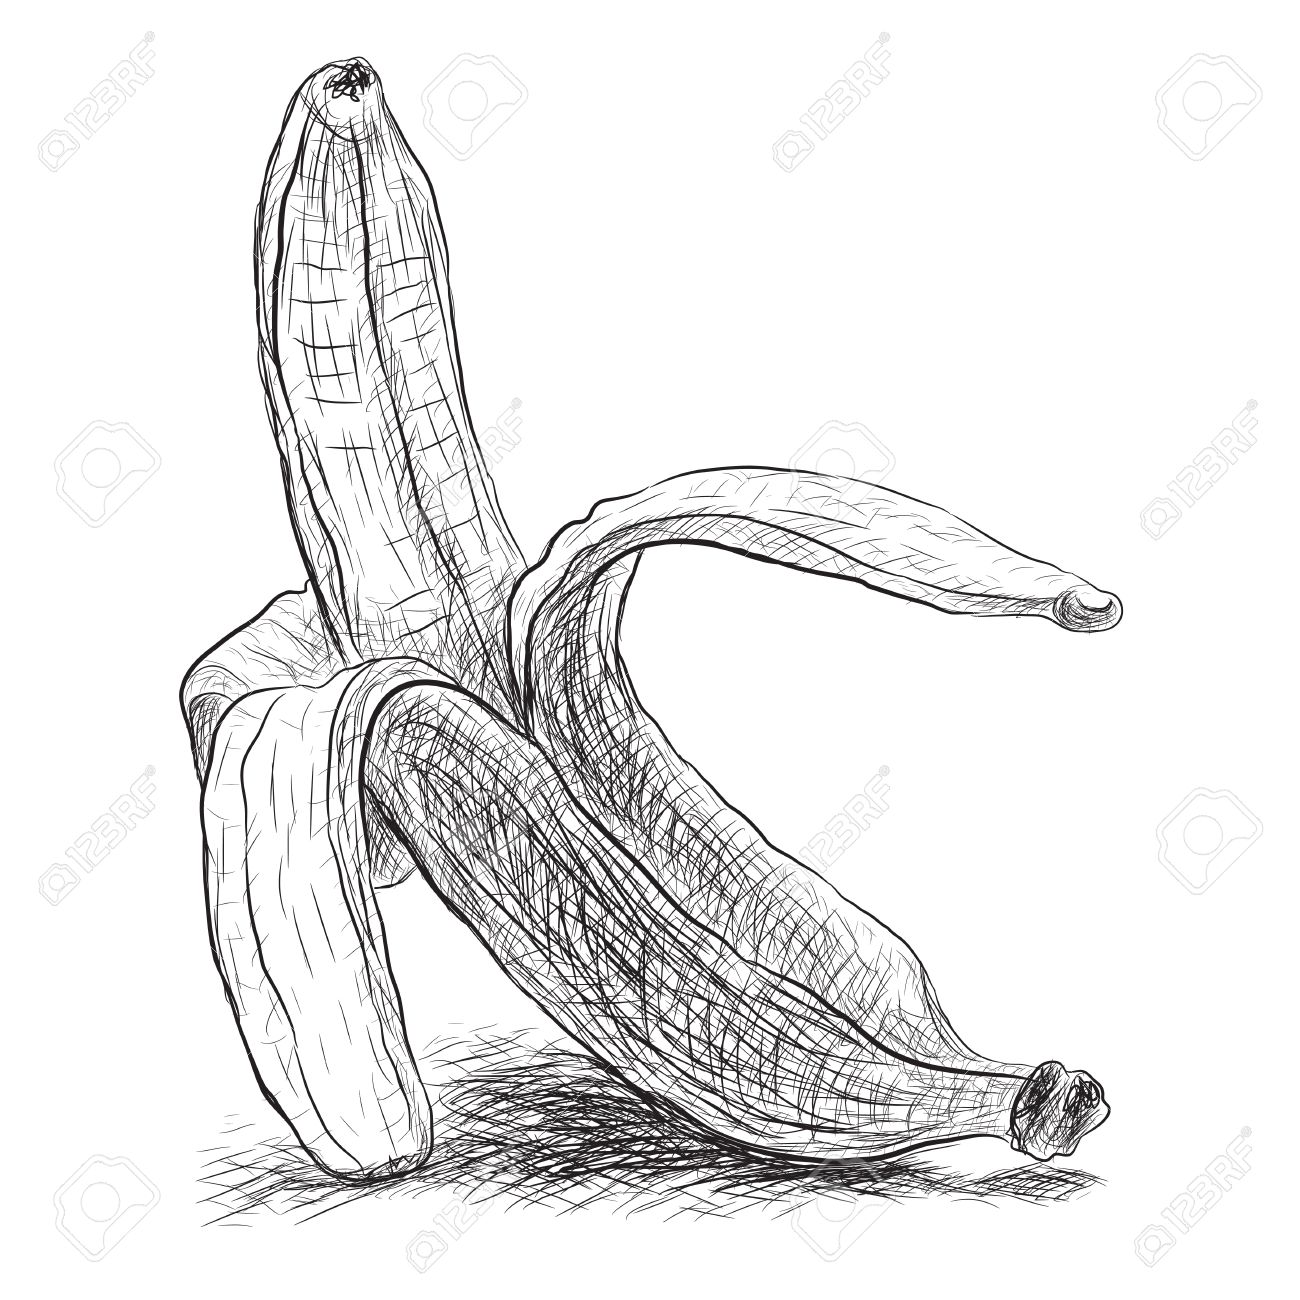 banana color pencil drawing